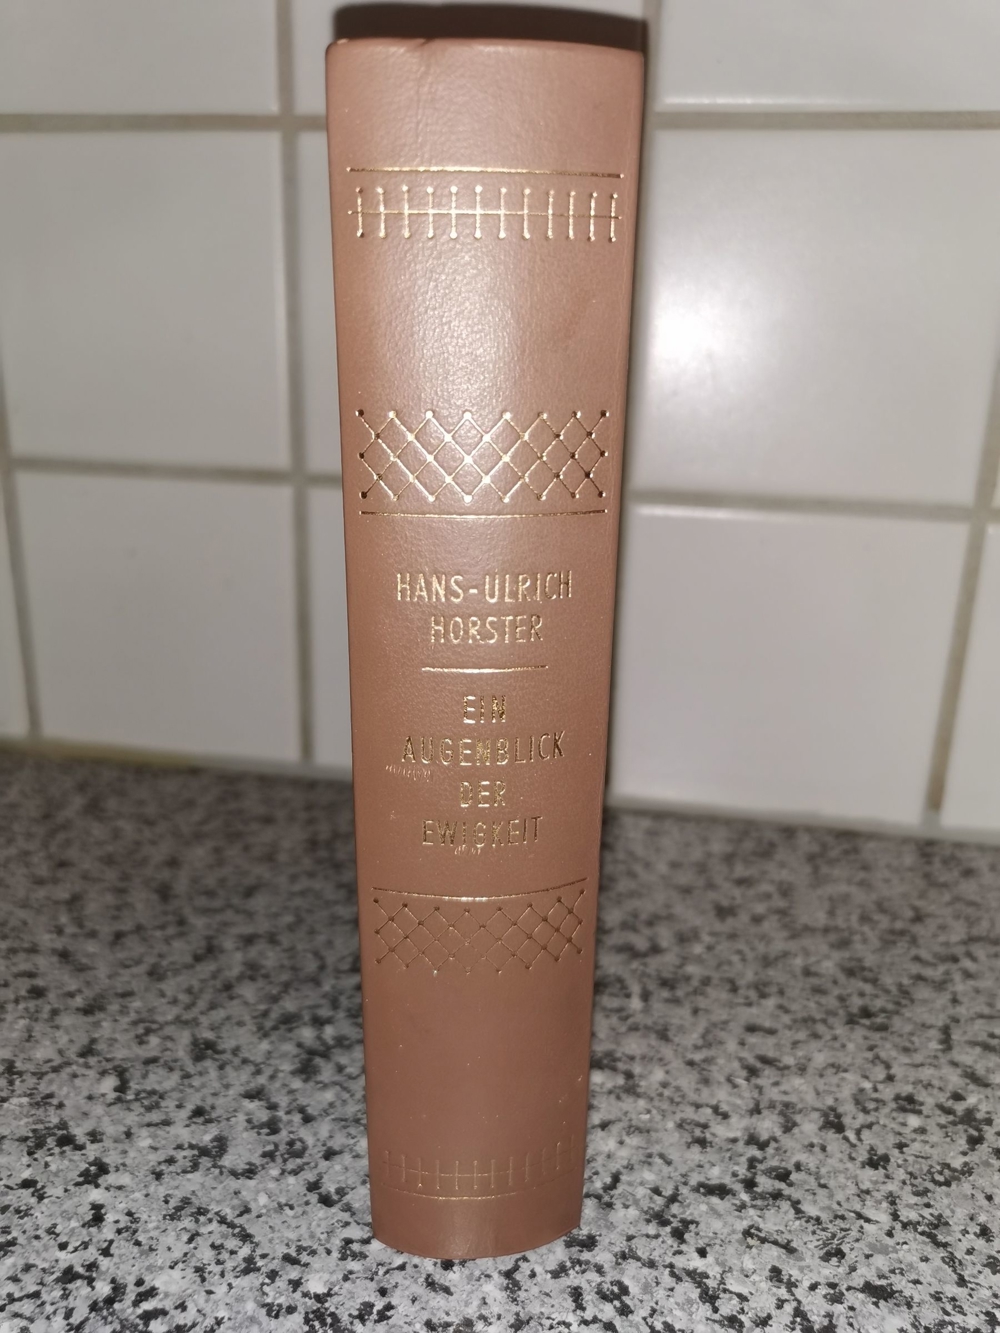 Buch "Ein Augenblick der Ewigkeit" Hans-Ulrich Horster 1959